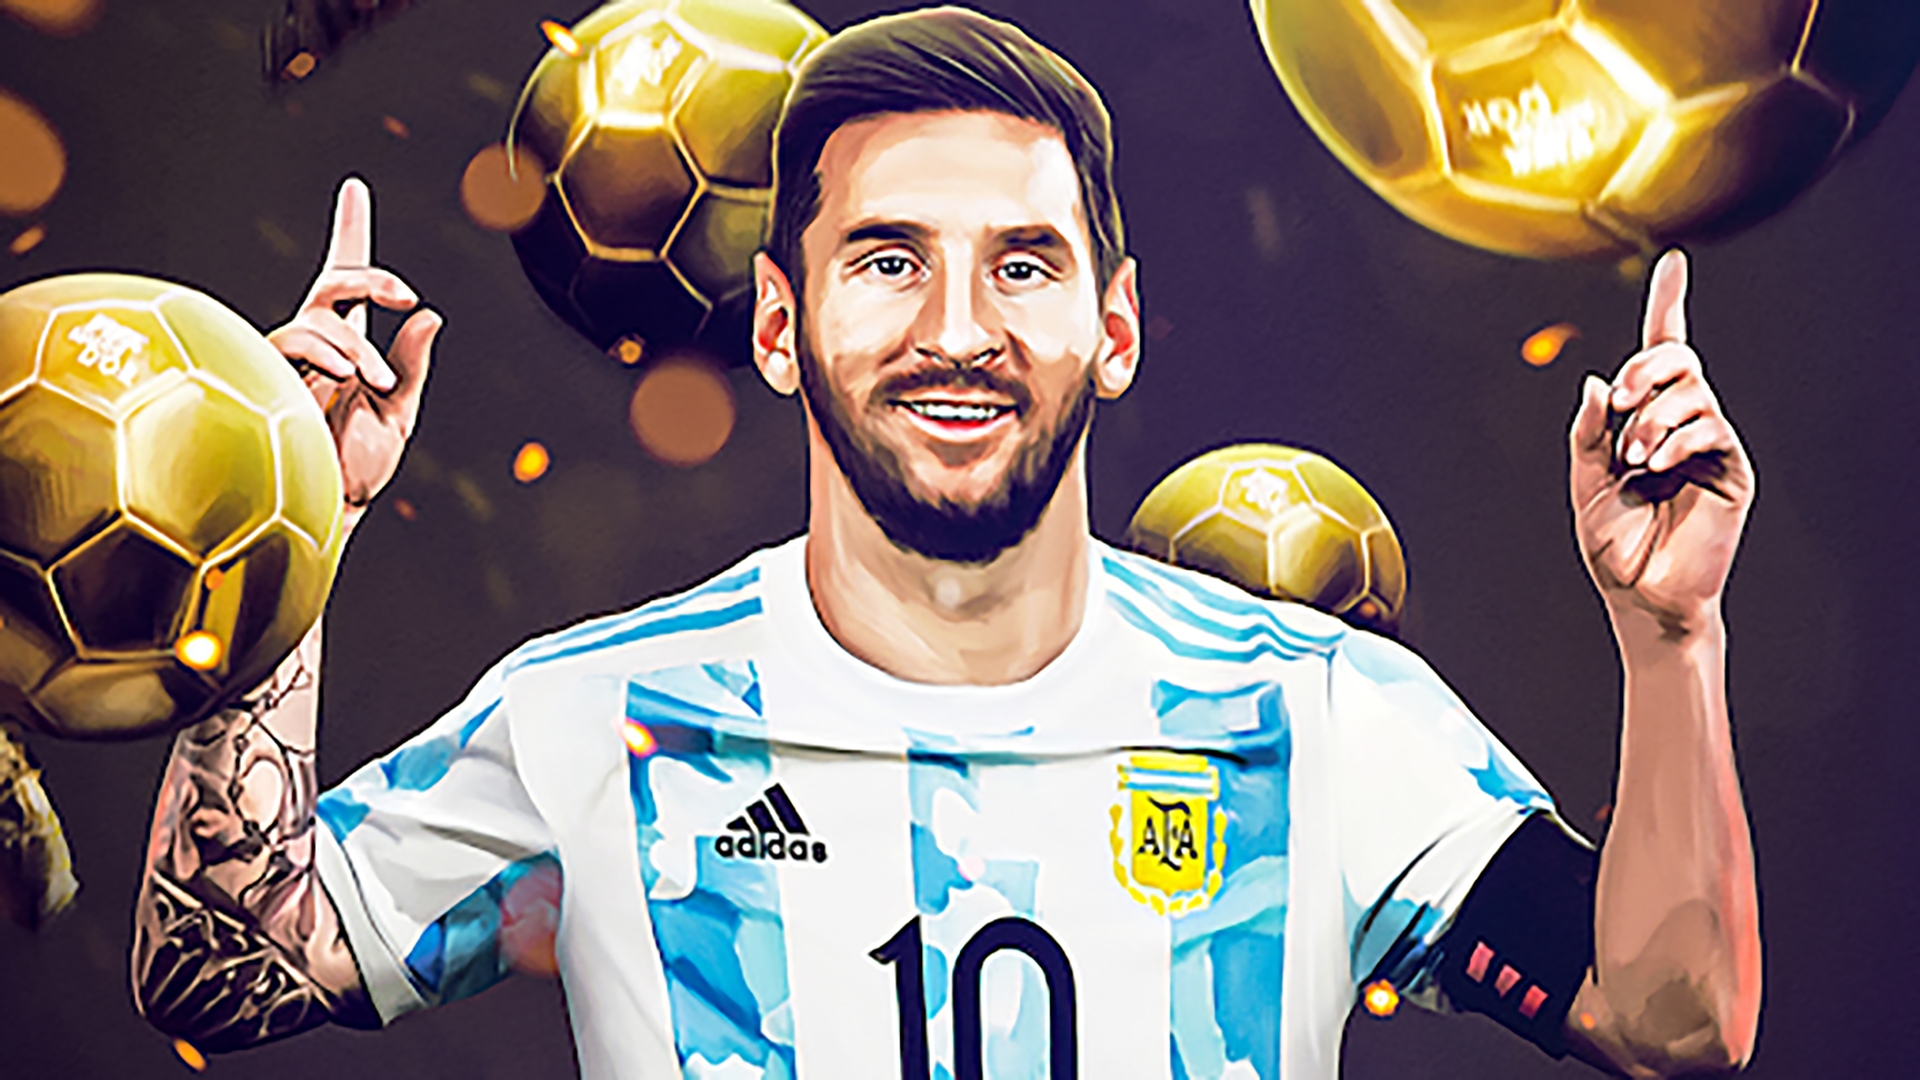 Messi giành được nhiều giải thưởng danh giá trong sự nghiệp bóng đá của mình